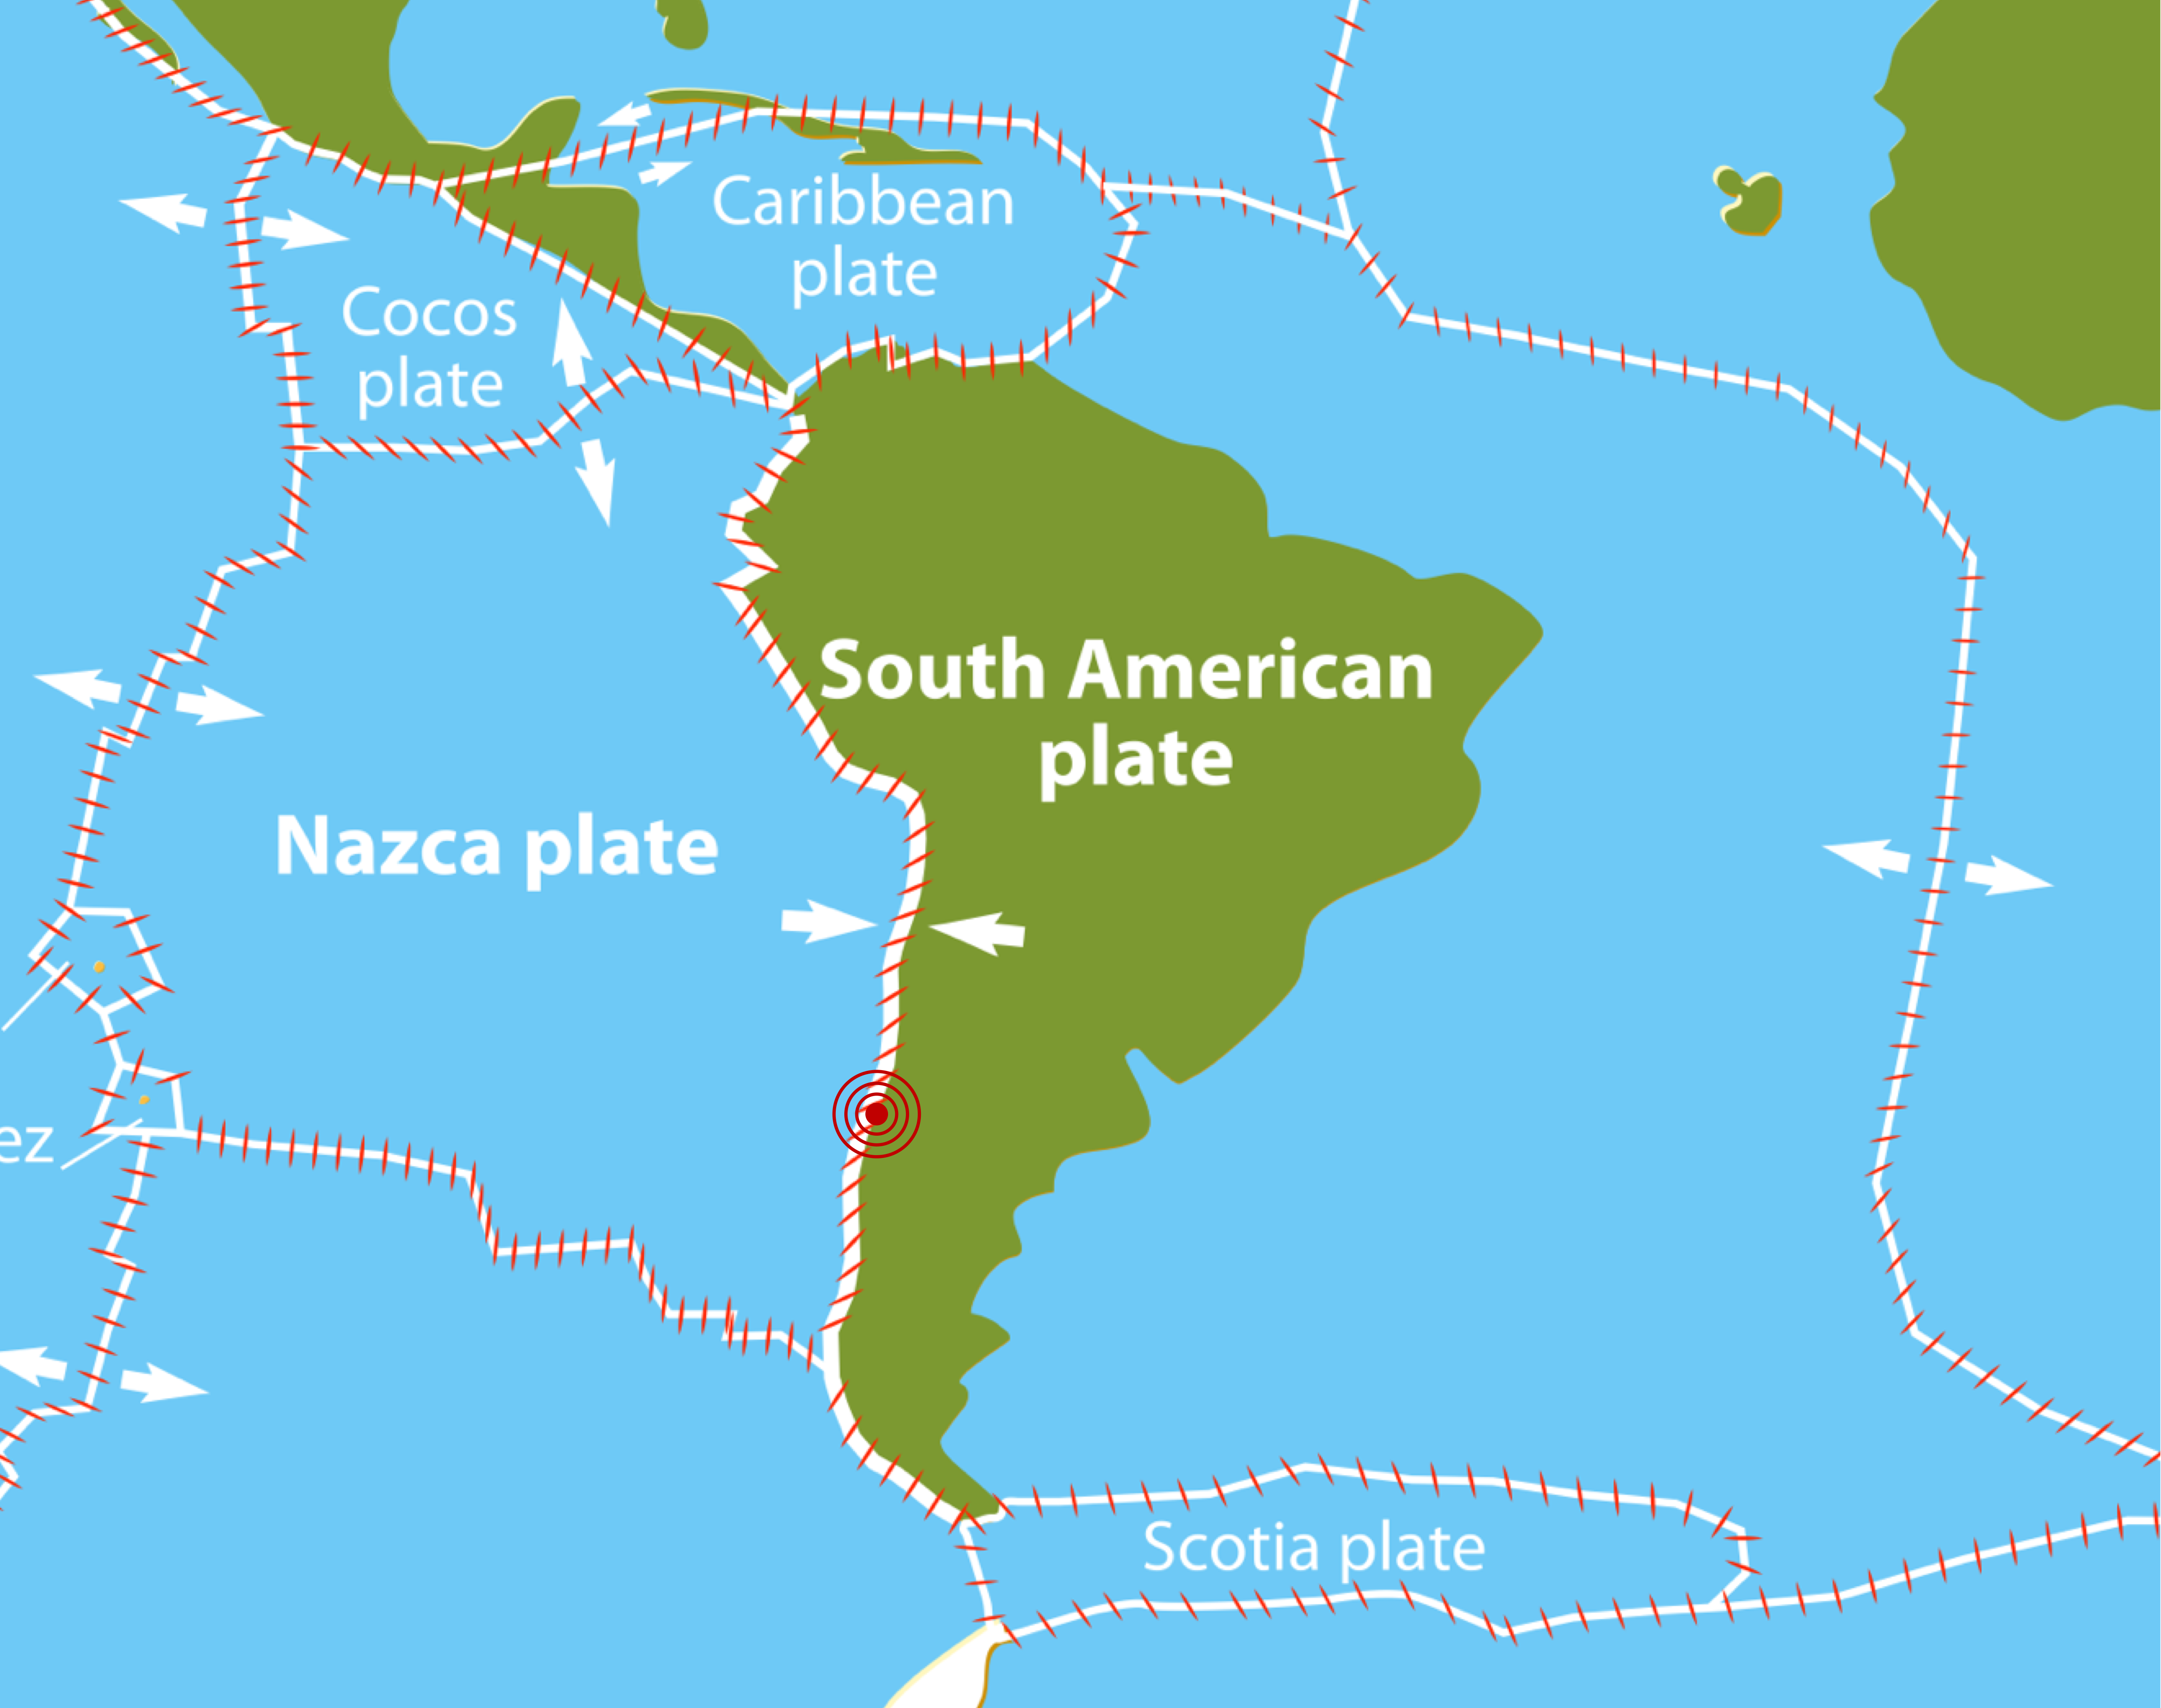 Chile Earthquake Map